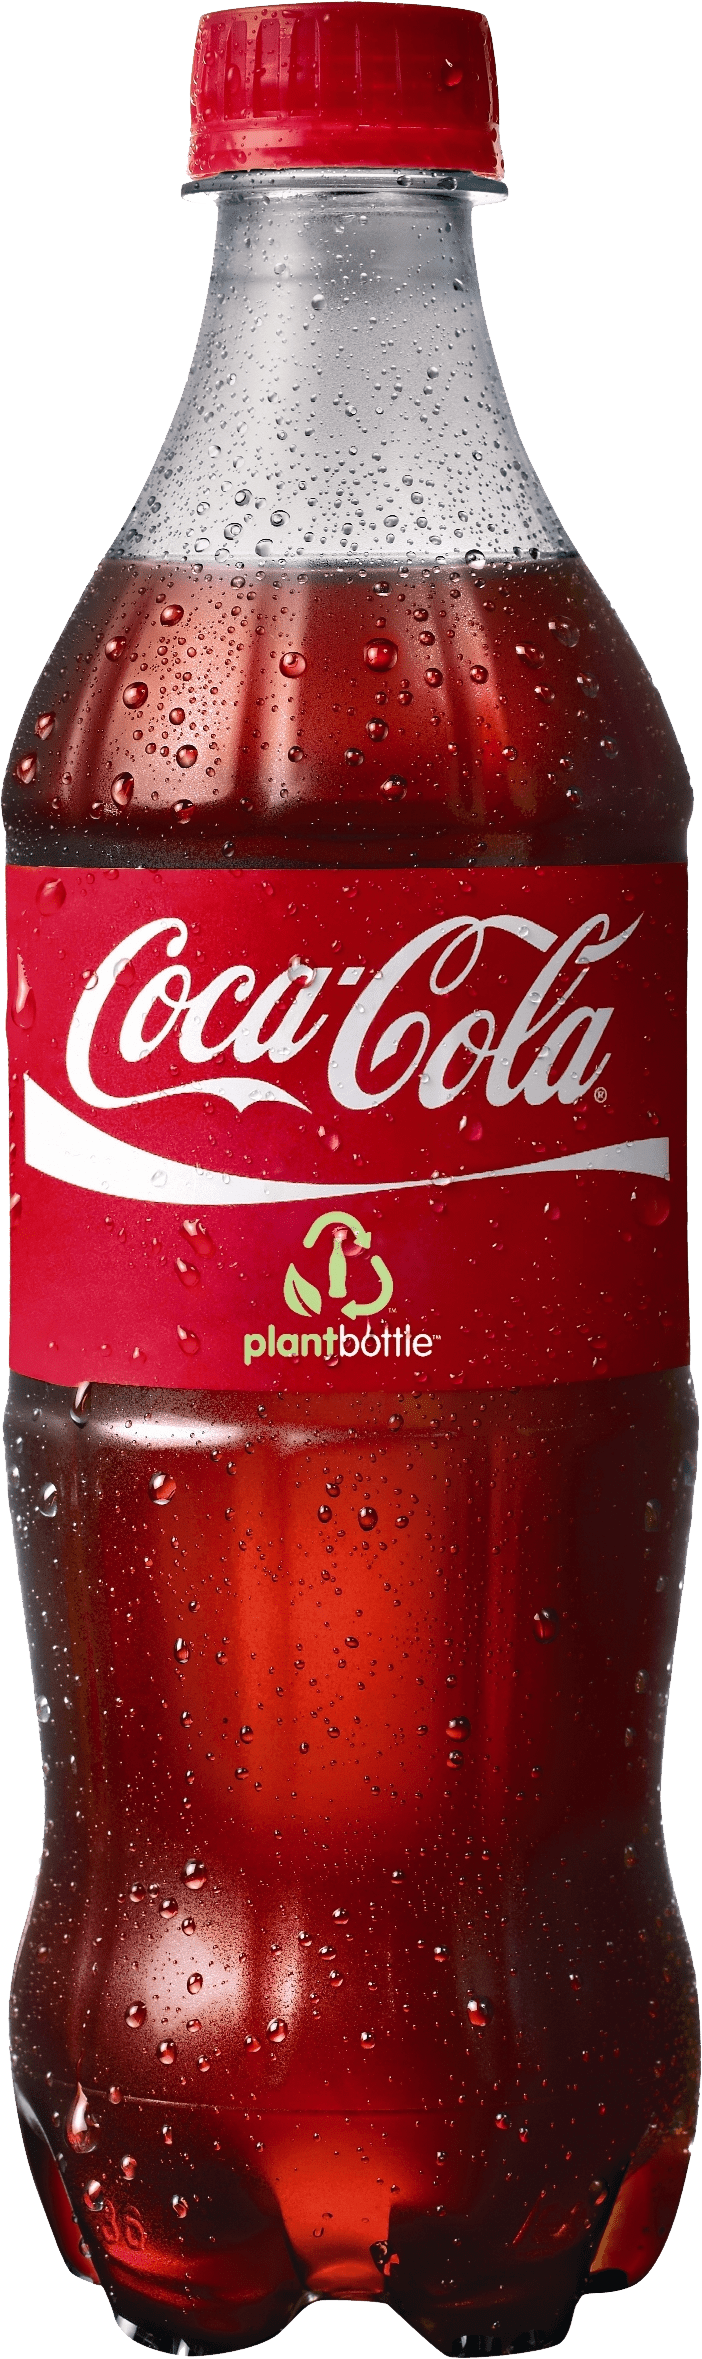 Coca Cola Plant Bottle Product Image PNG